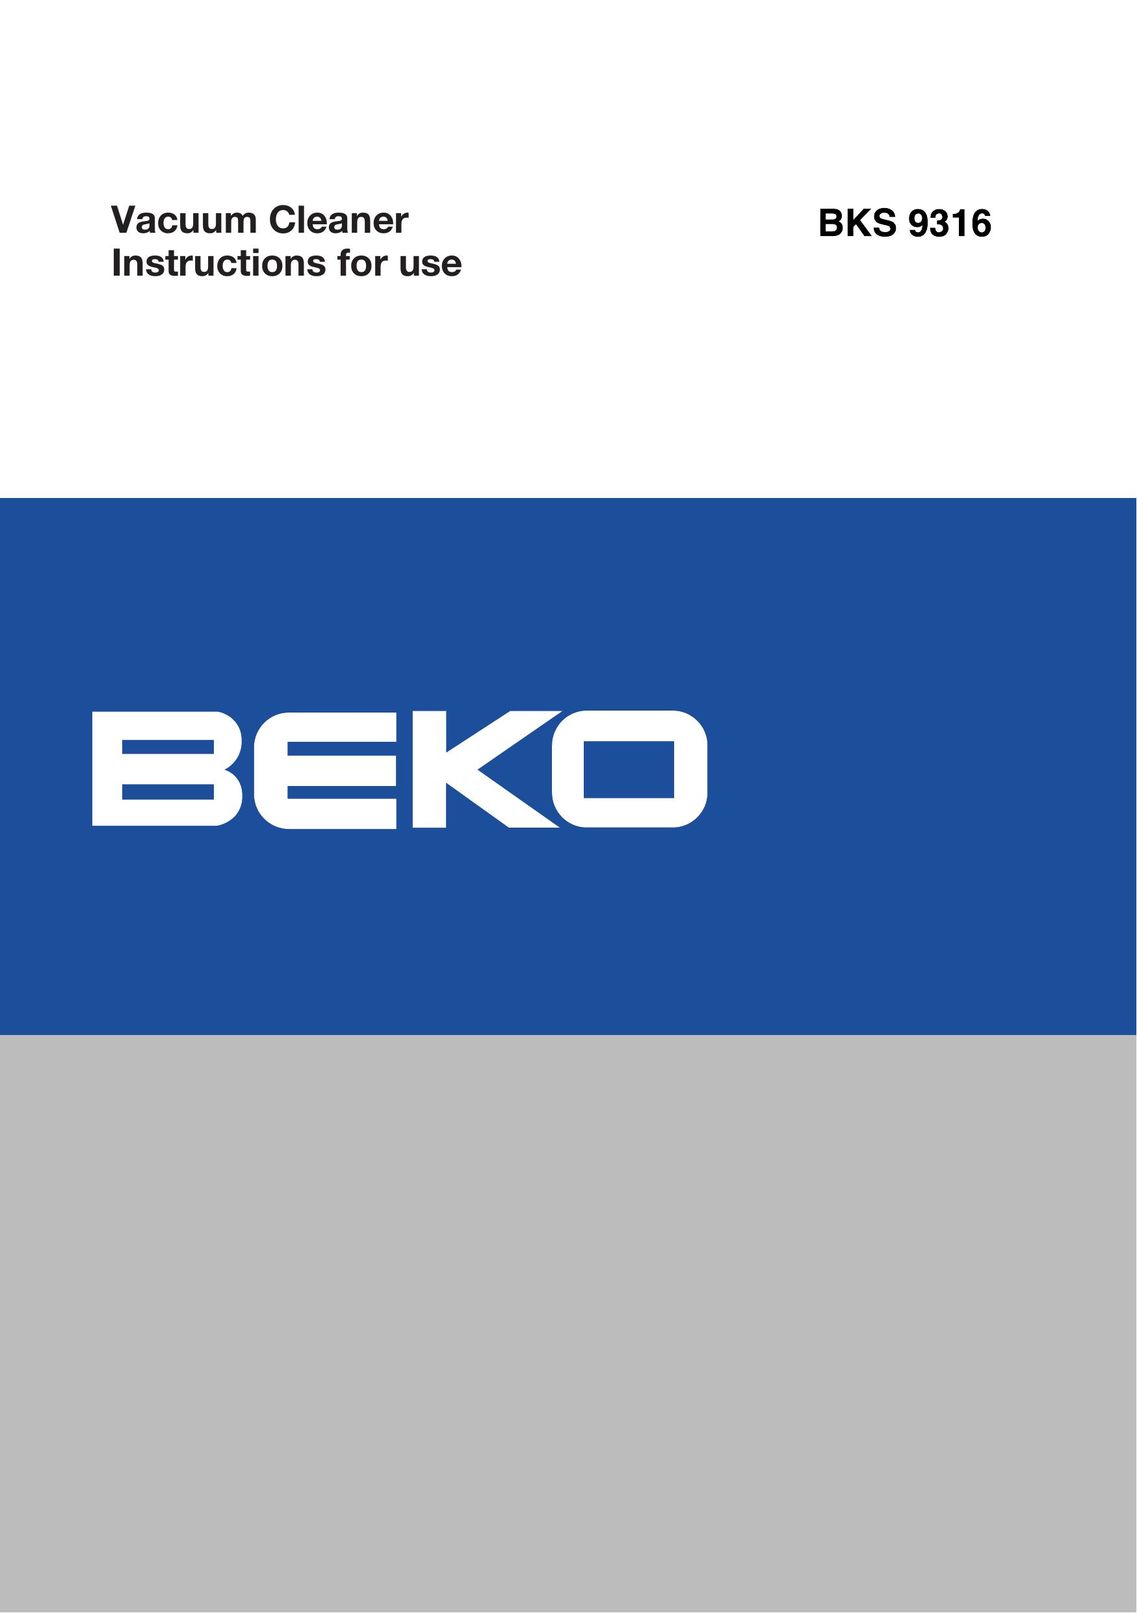 Beko BKS 9316 Vacuum Cleaner User Manual